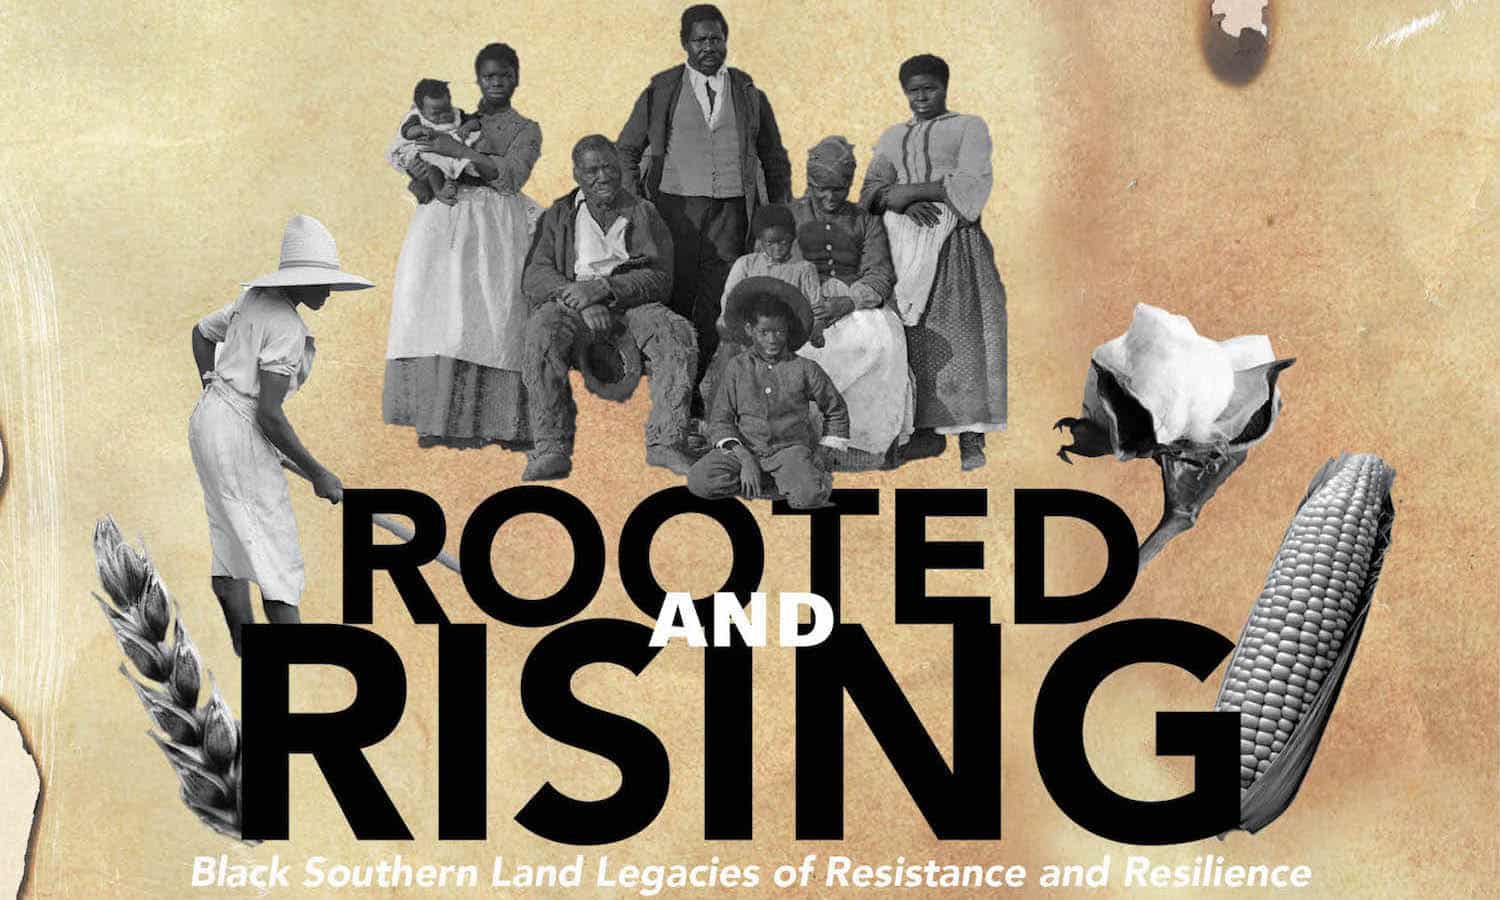 主题演讲者“扎根和崛起：黑人南部土地抵抗和弹性的遗产”，由黑色城市种植者主持